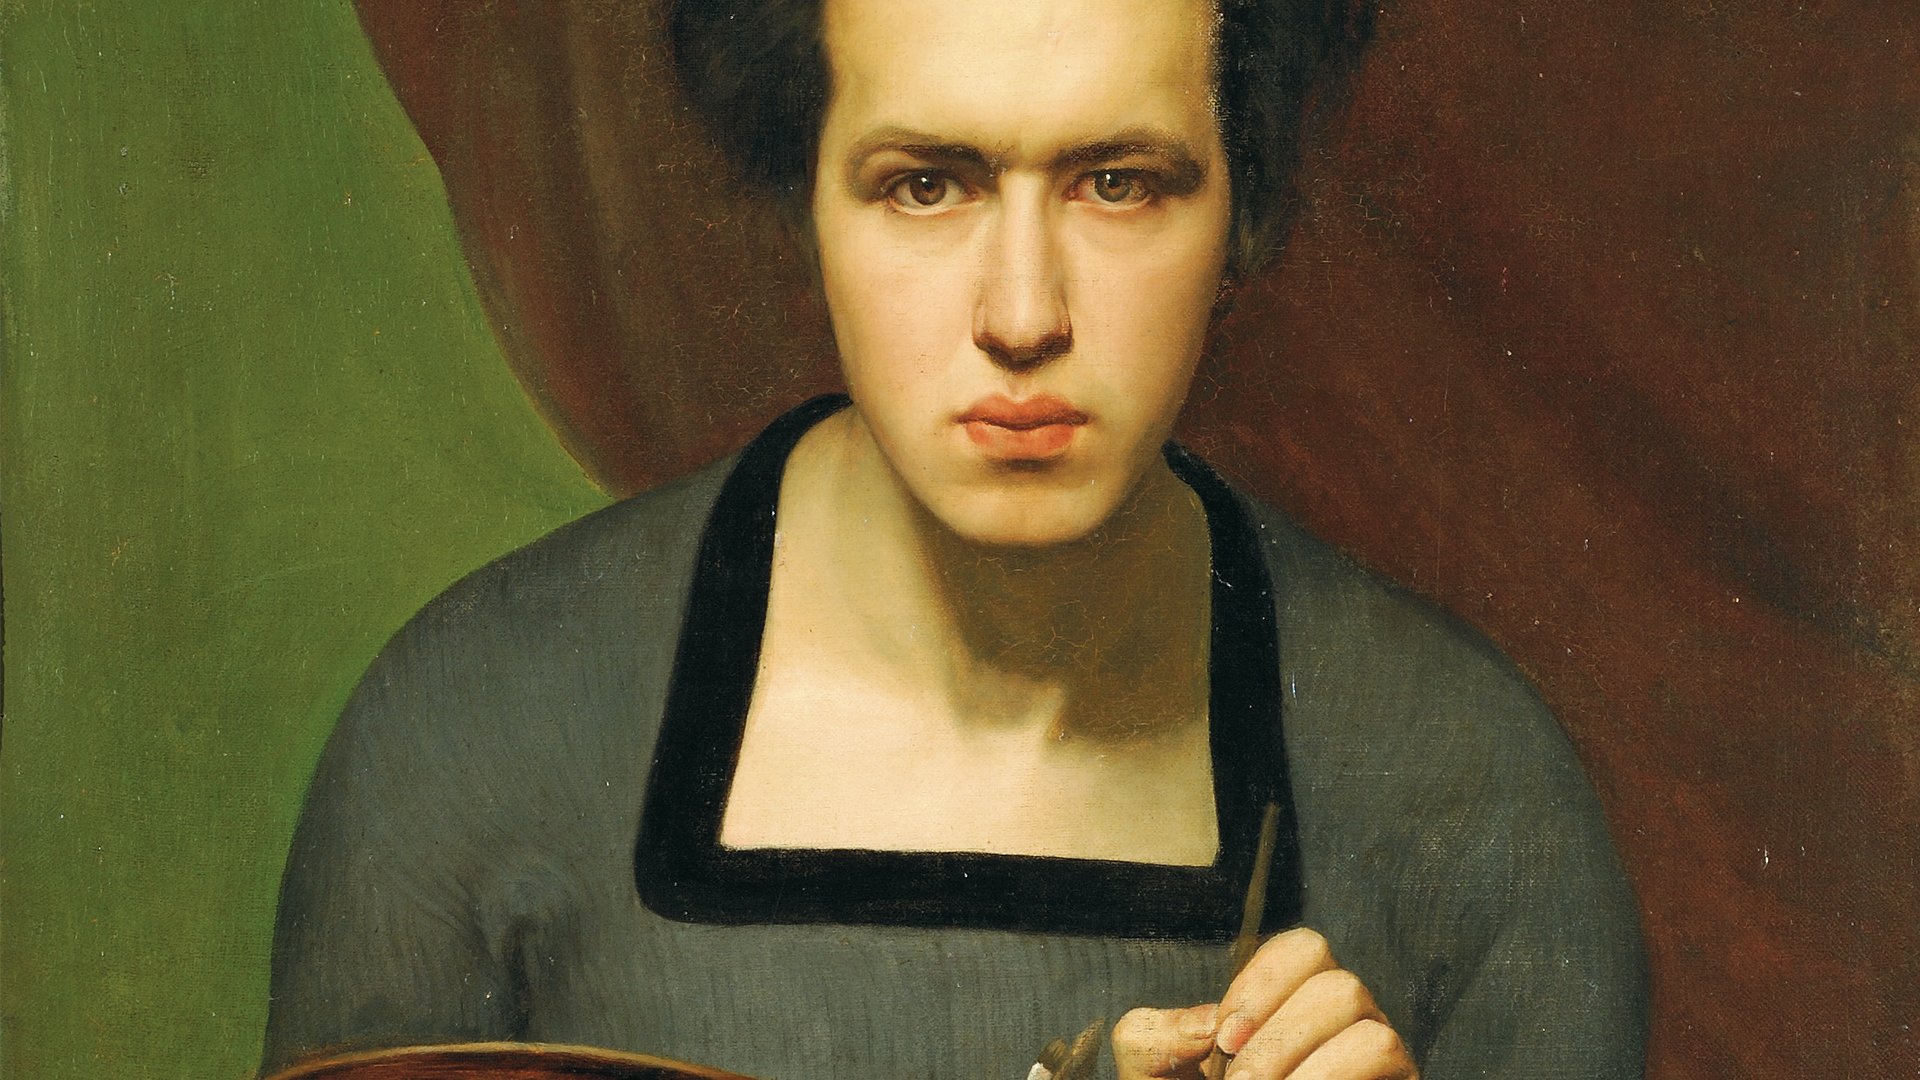 Abbildung des Selbstporträts von Louis Janmot aus dem Jahr 1832, das in der Ausstellung "Ich bin hier" vom 31. Oktober 2015 bis 31. Januar 2016 in der Staatlichen Kunsthalle Karlsruhe zu sehen war.